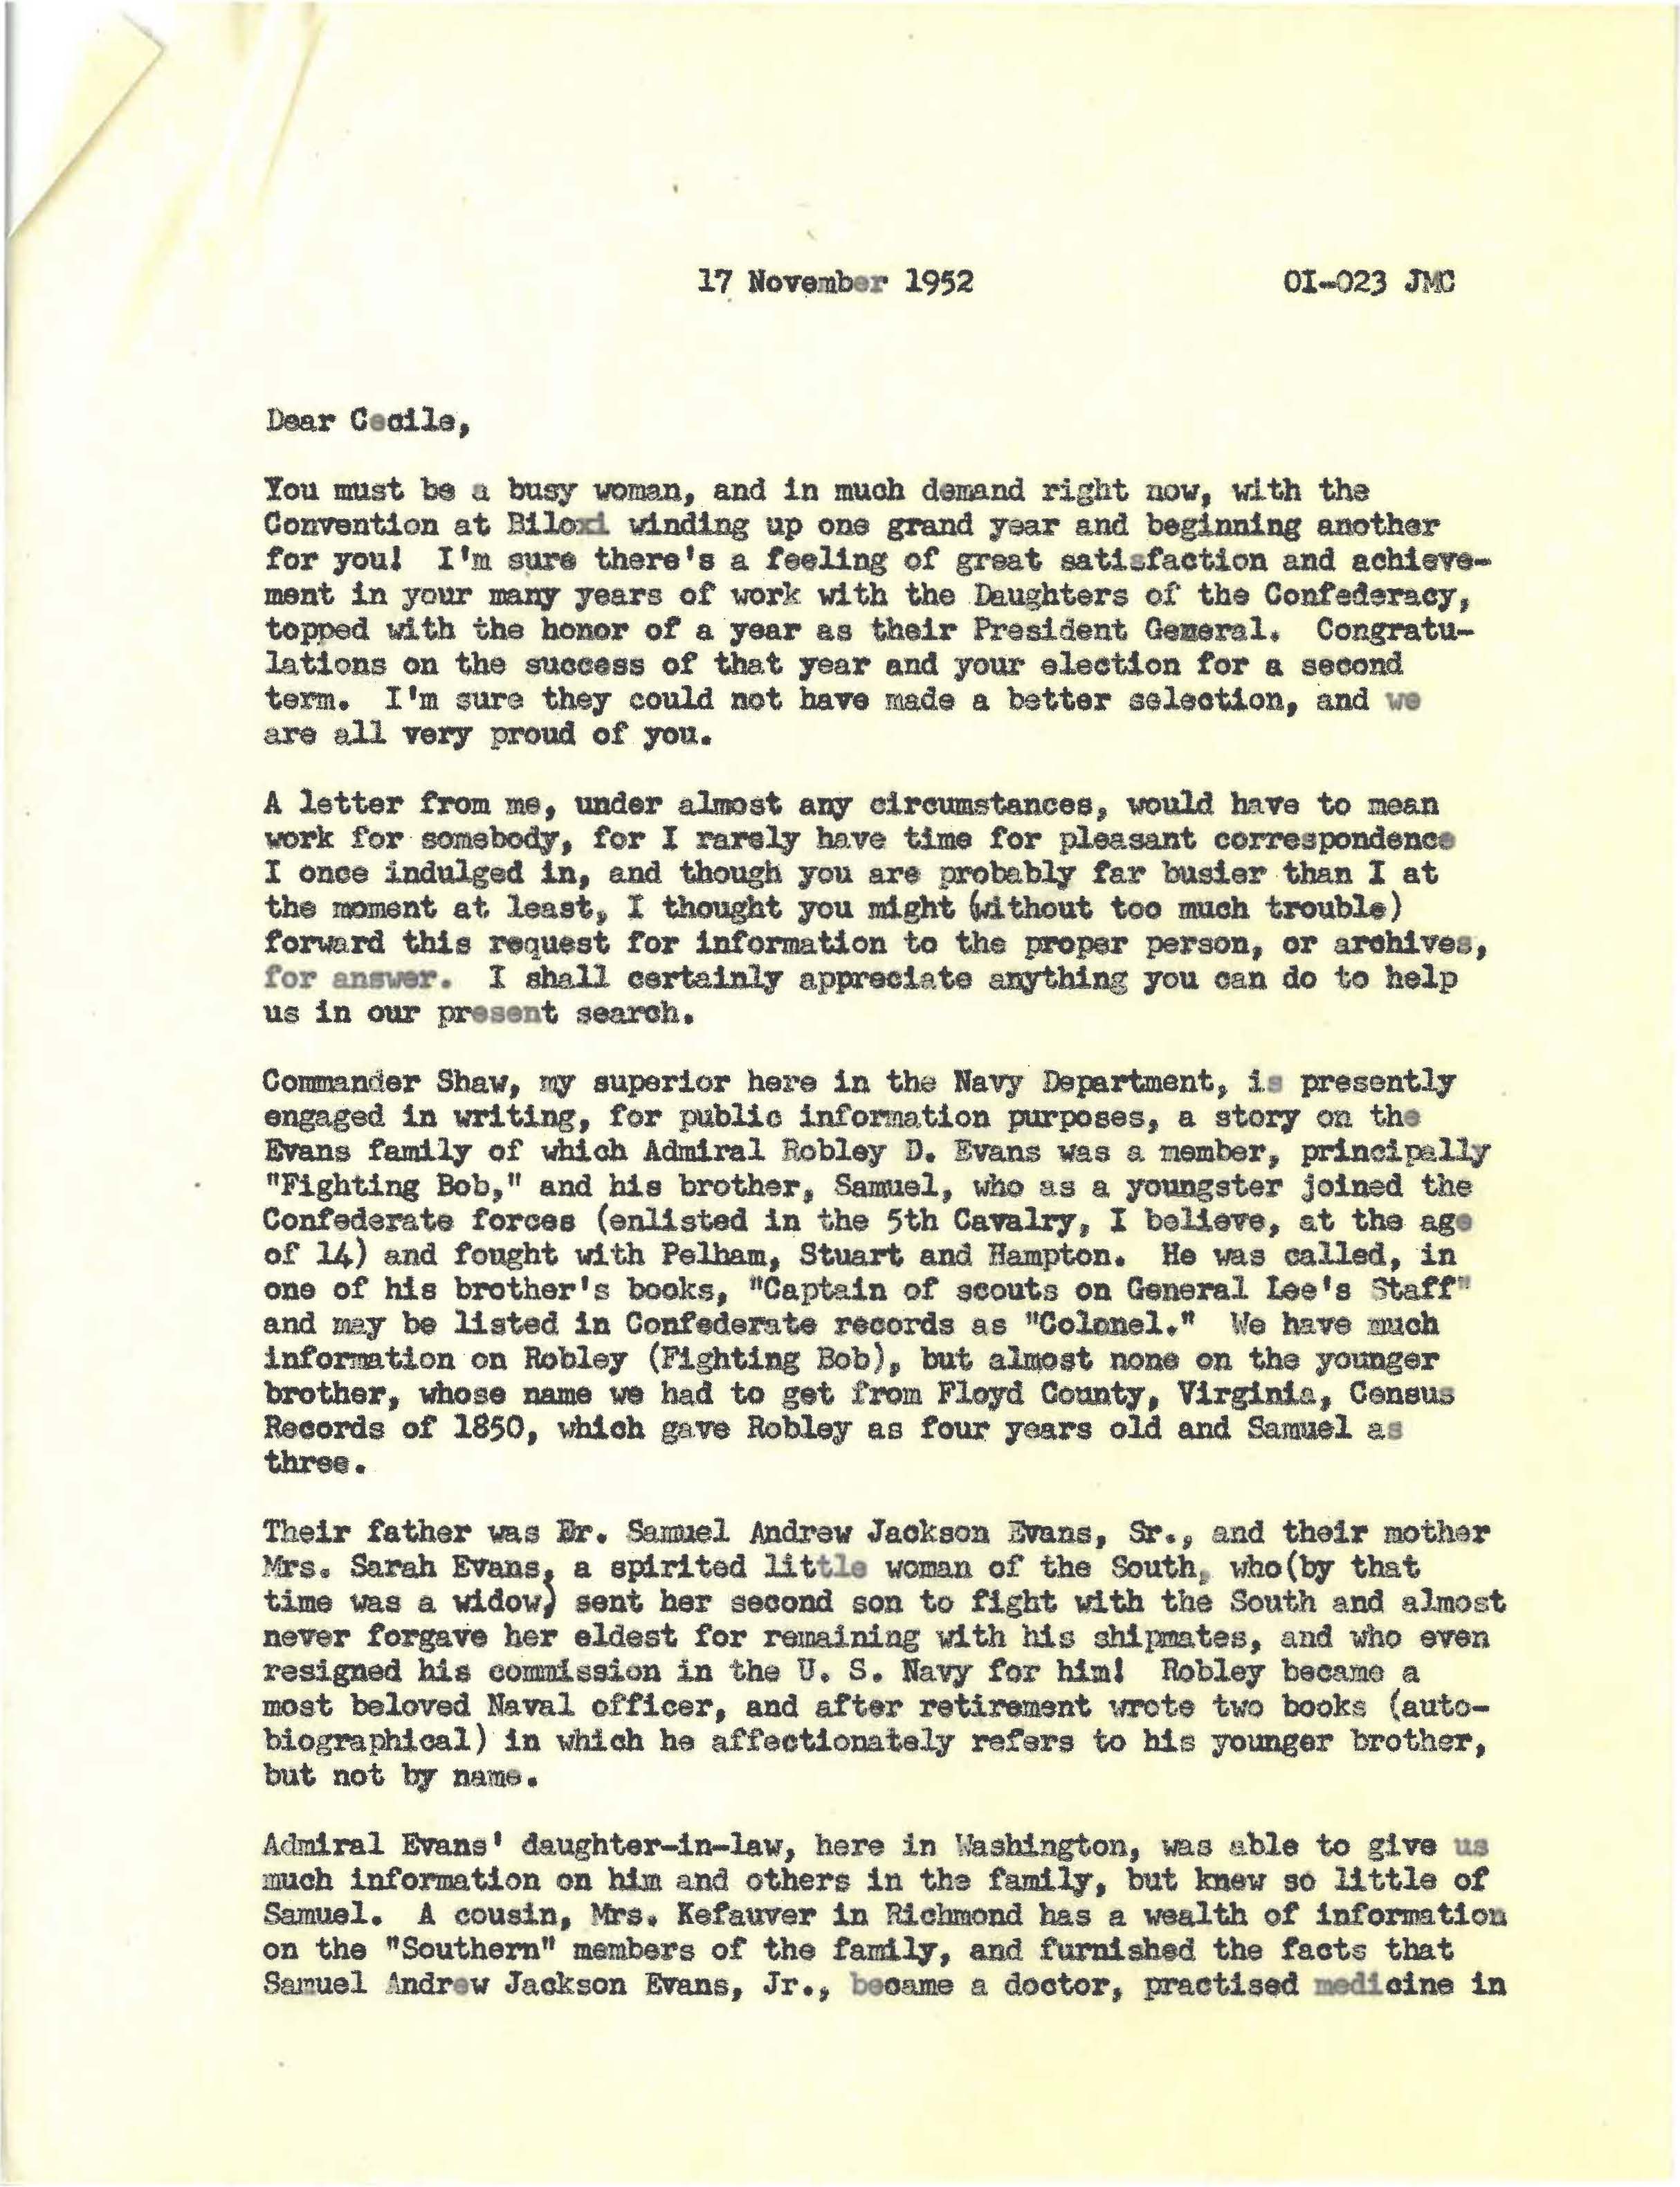 Josephine M. Crawford letter to Mrs. Glenn Long